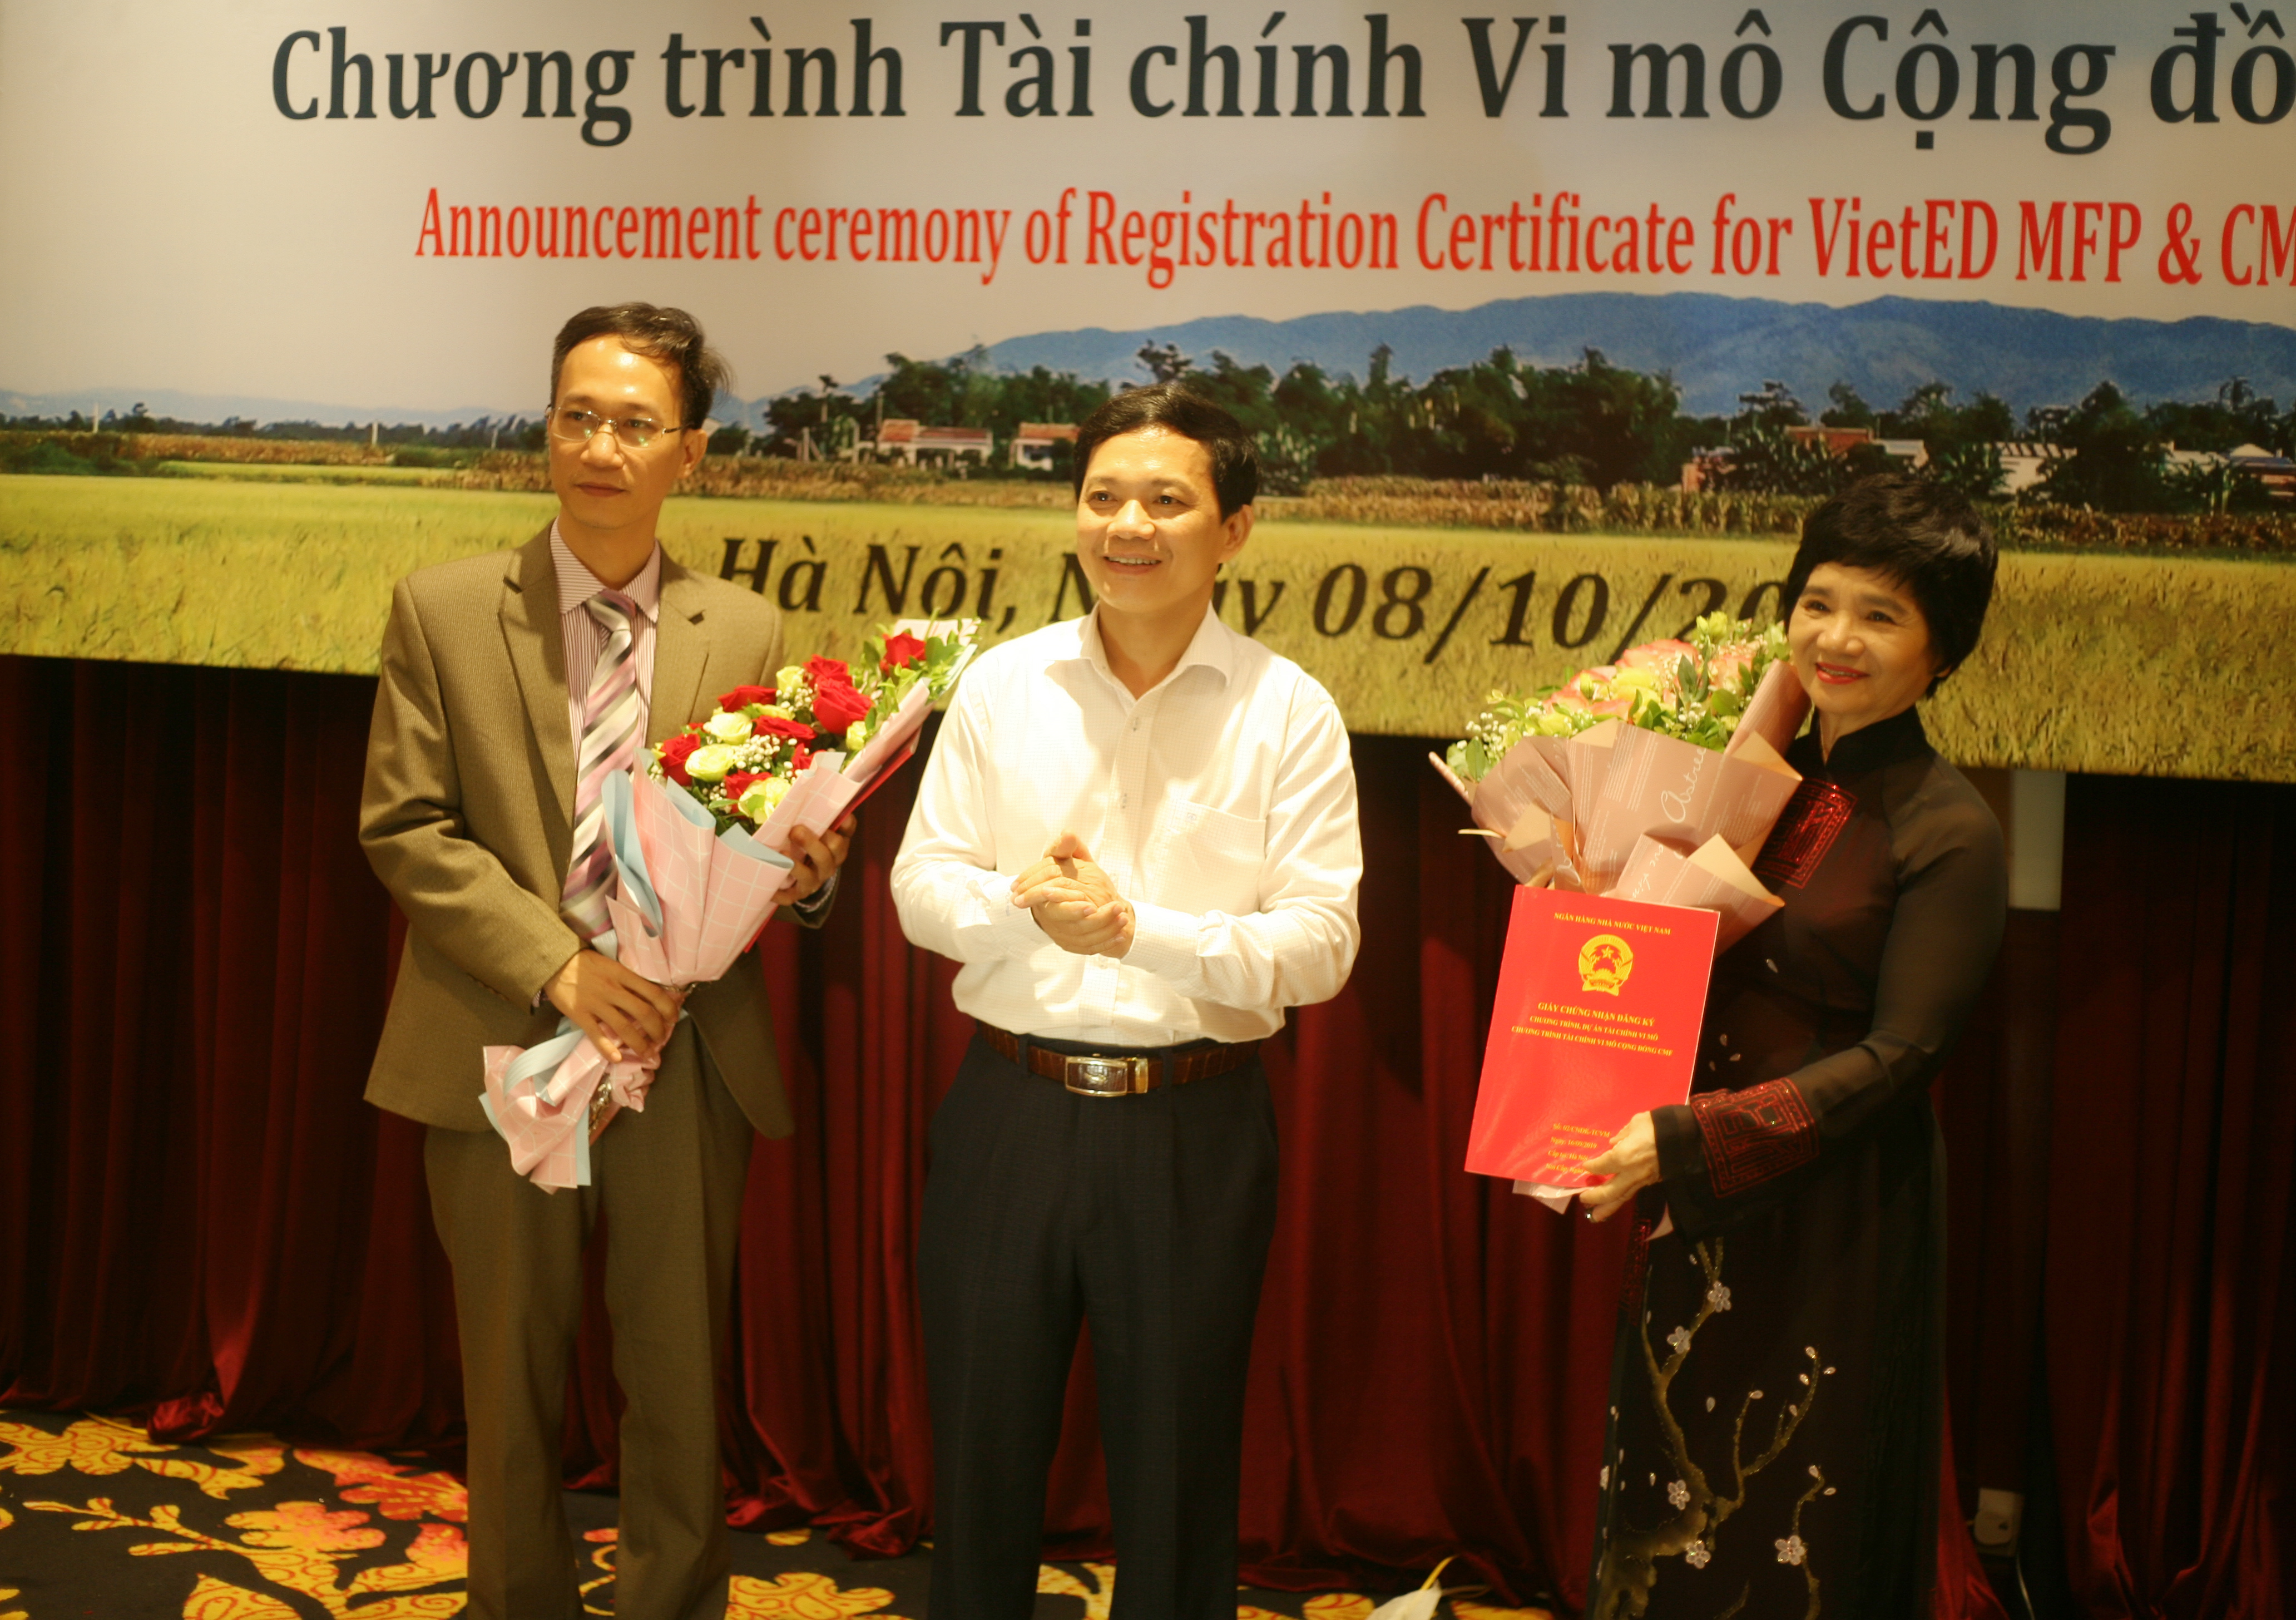 VietED và CFRC tổ chức Công bố Giấy Chứng nhận Đăng ký Chương trình Tài chính Vi mô